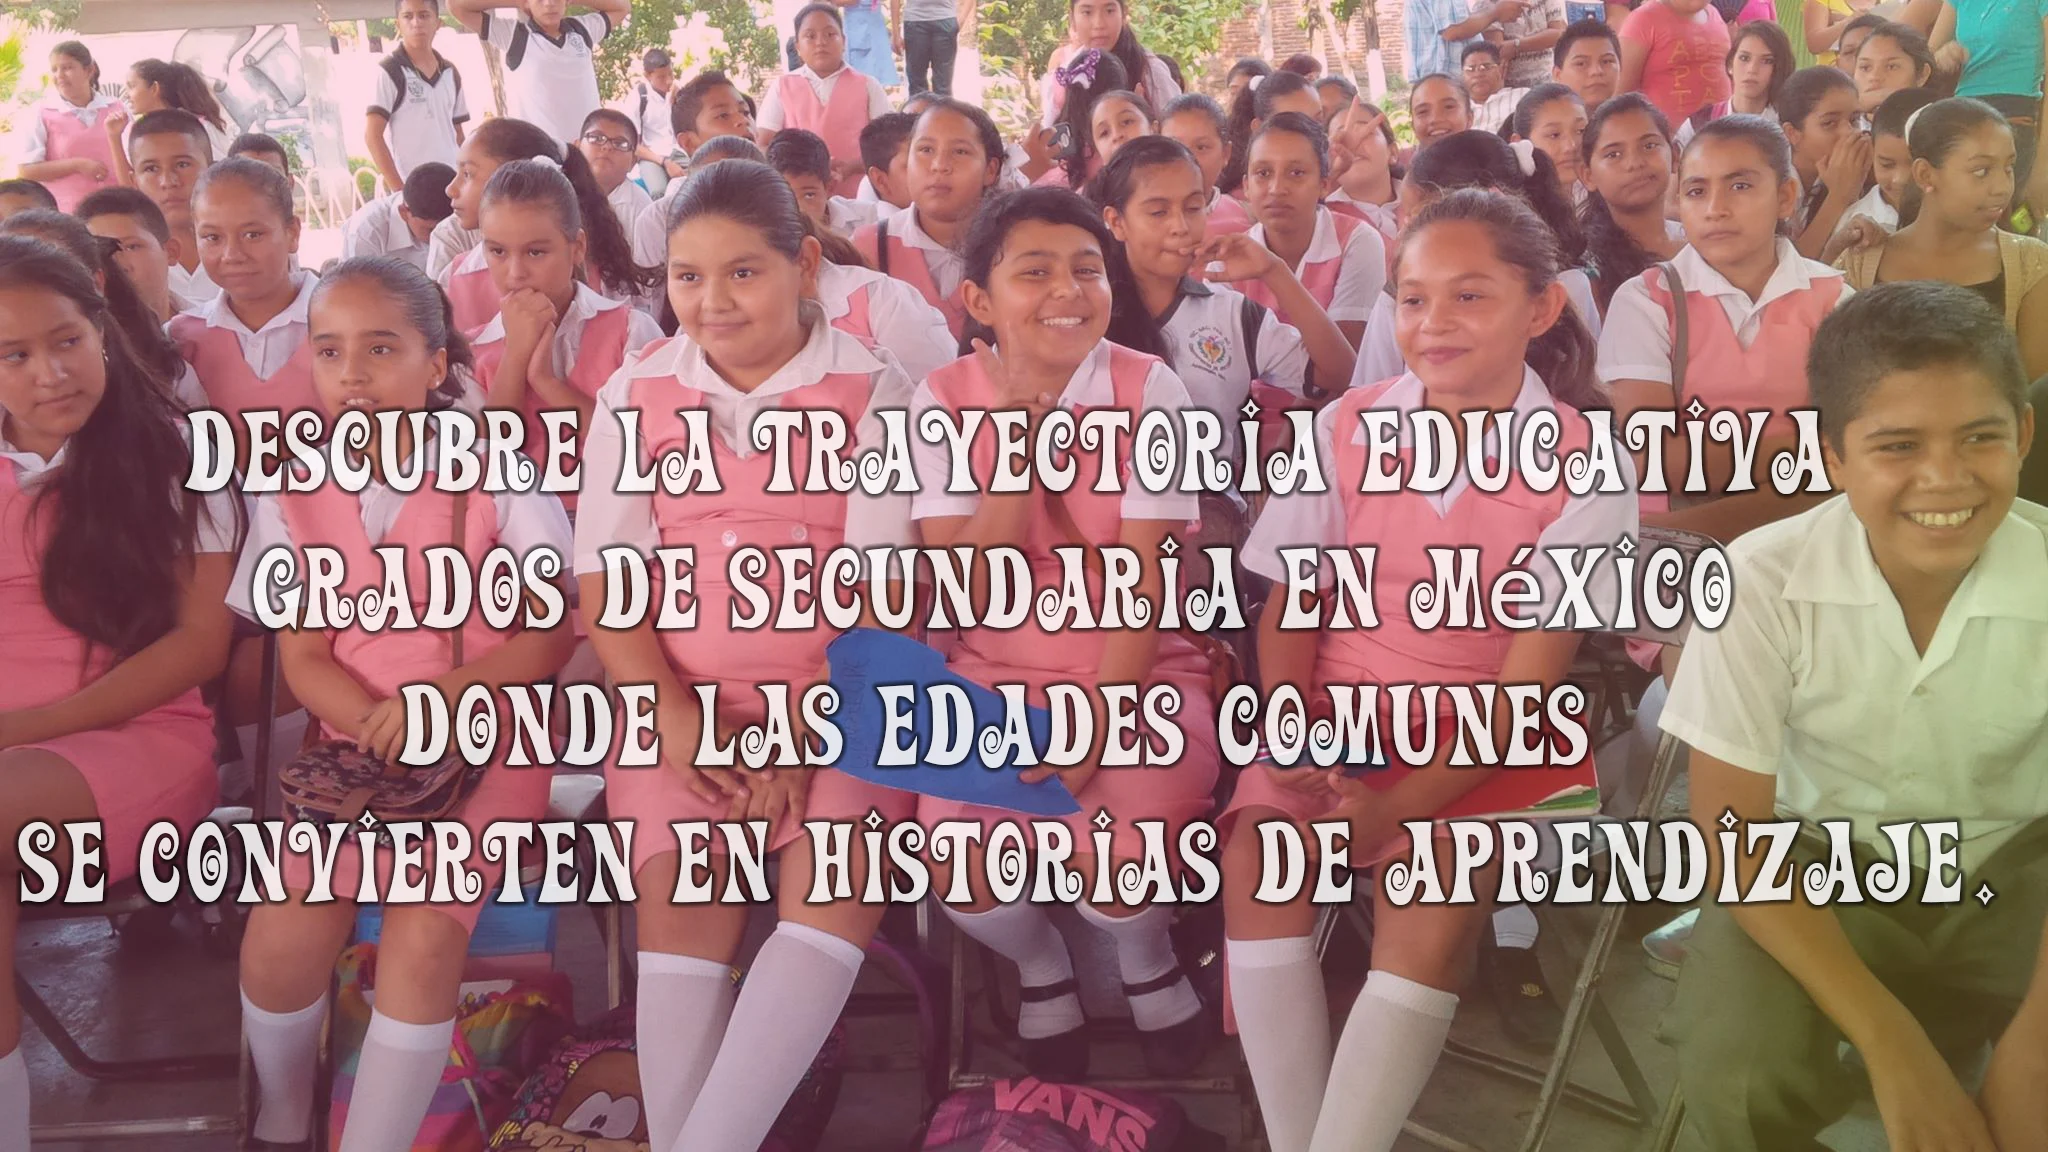 Está relacionado con la educación secundaria en México. Las nilas en la imagen visten ropa distintiva del primer